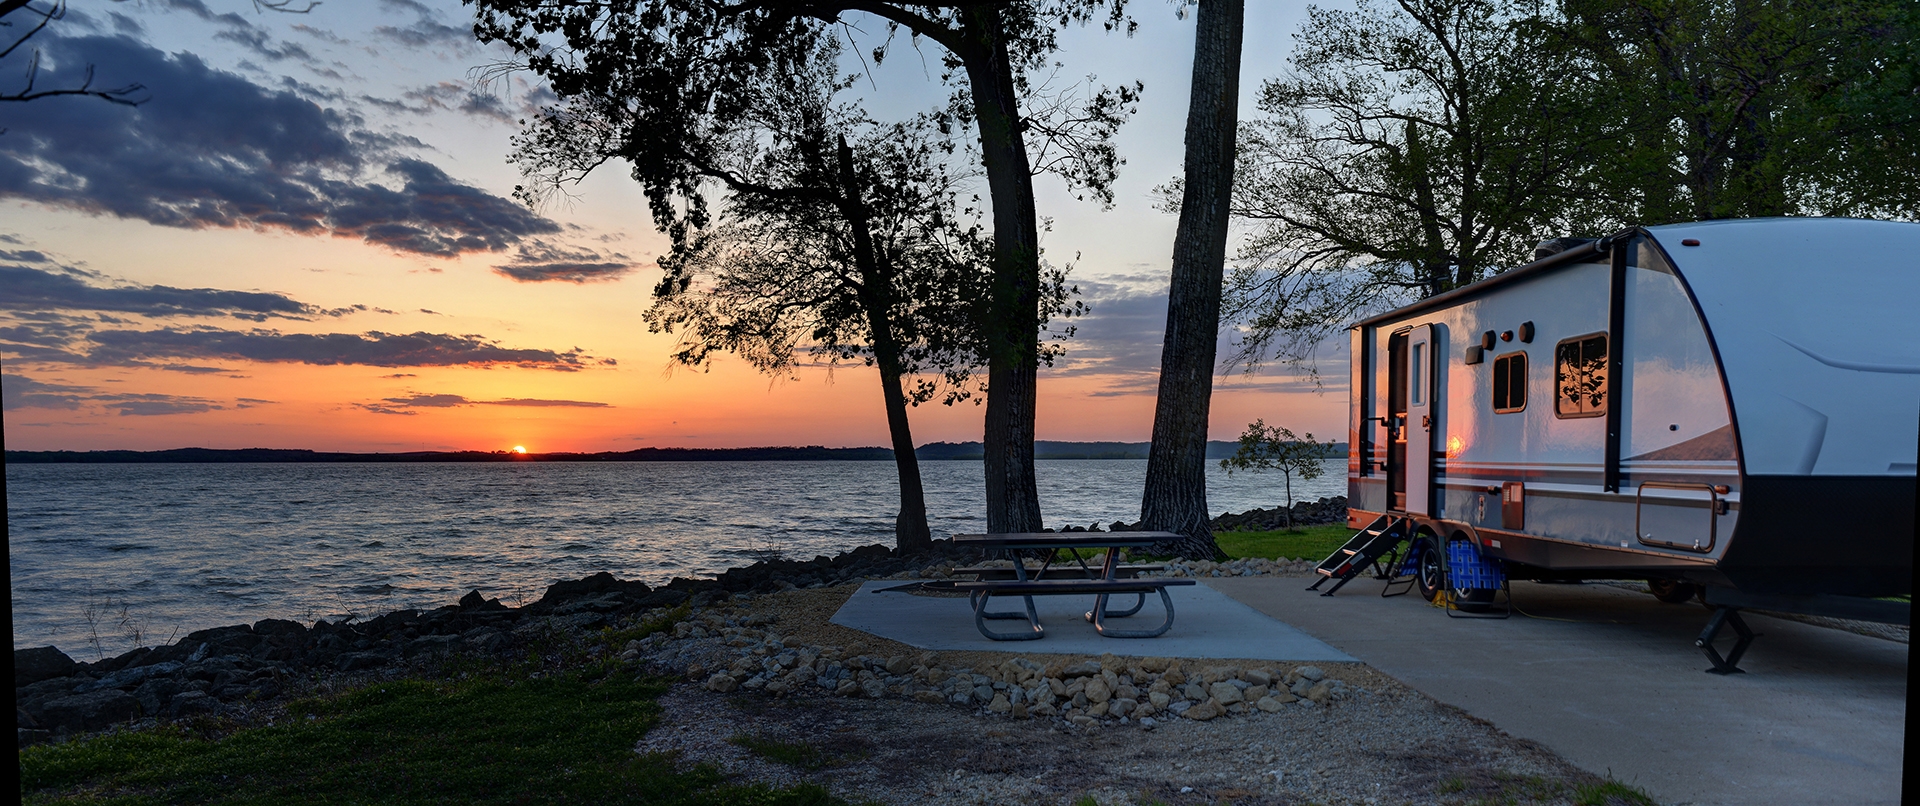 camper at lake during sunset